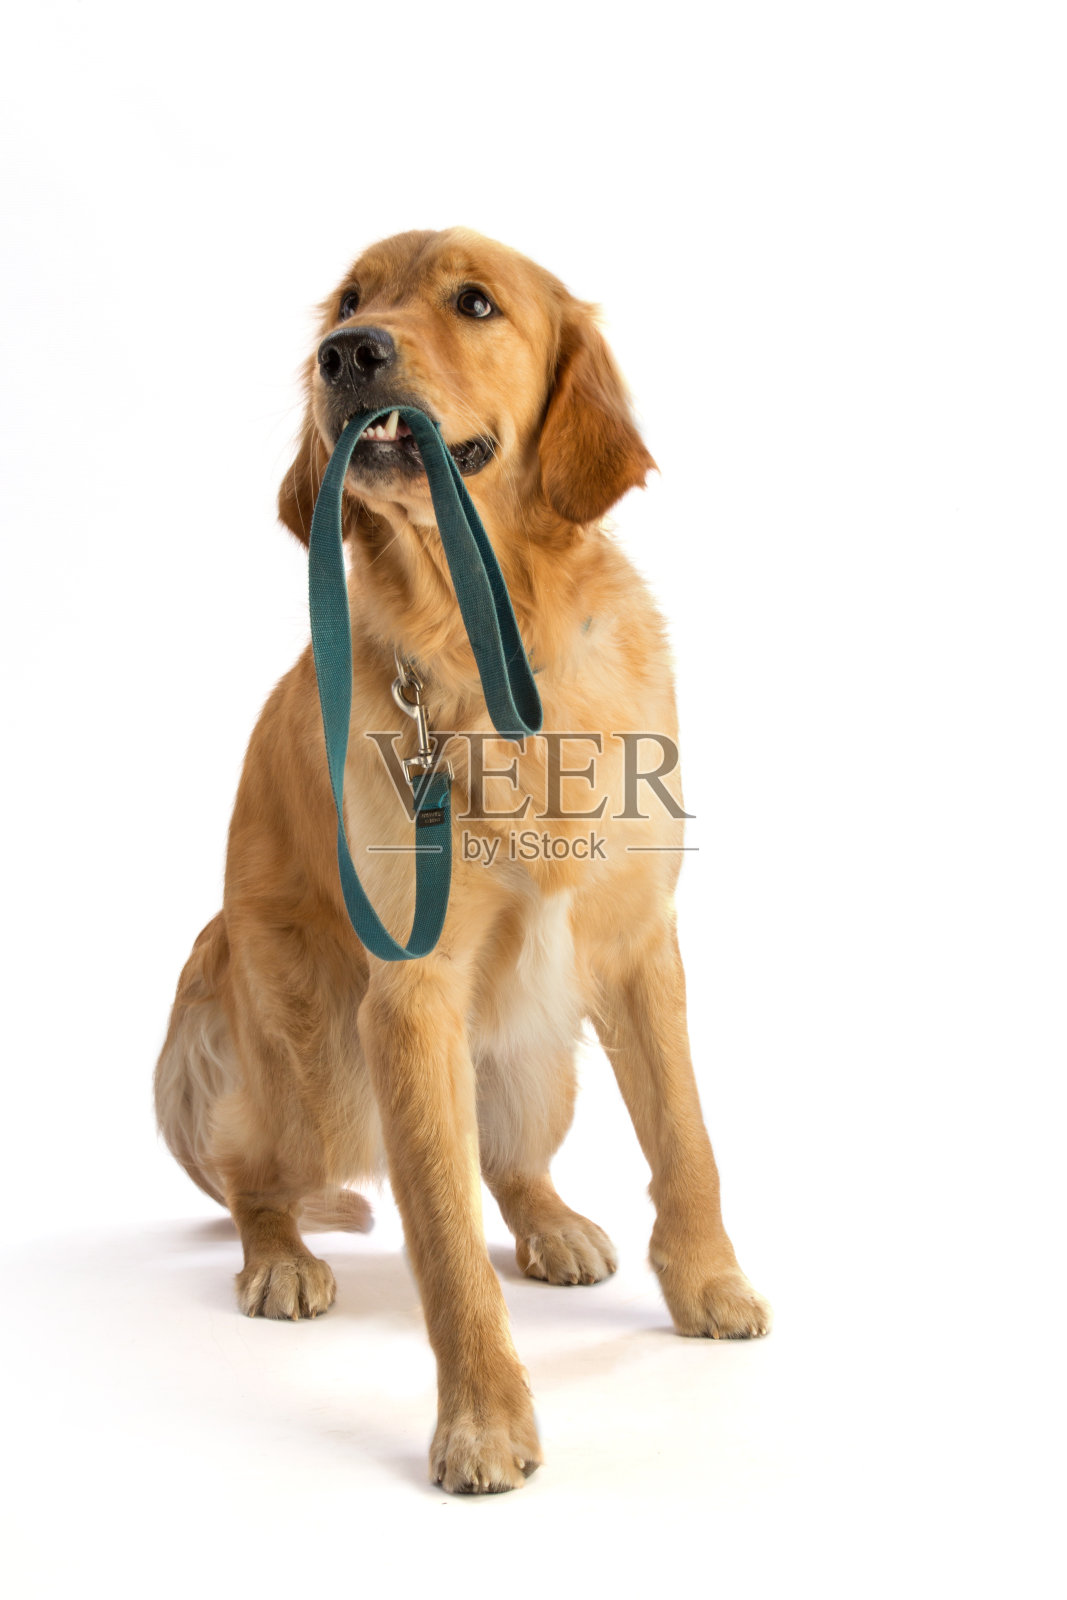 金毛猎犬用嘴叼着皮带照片摄影图片